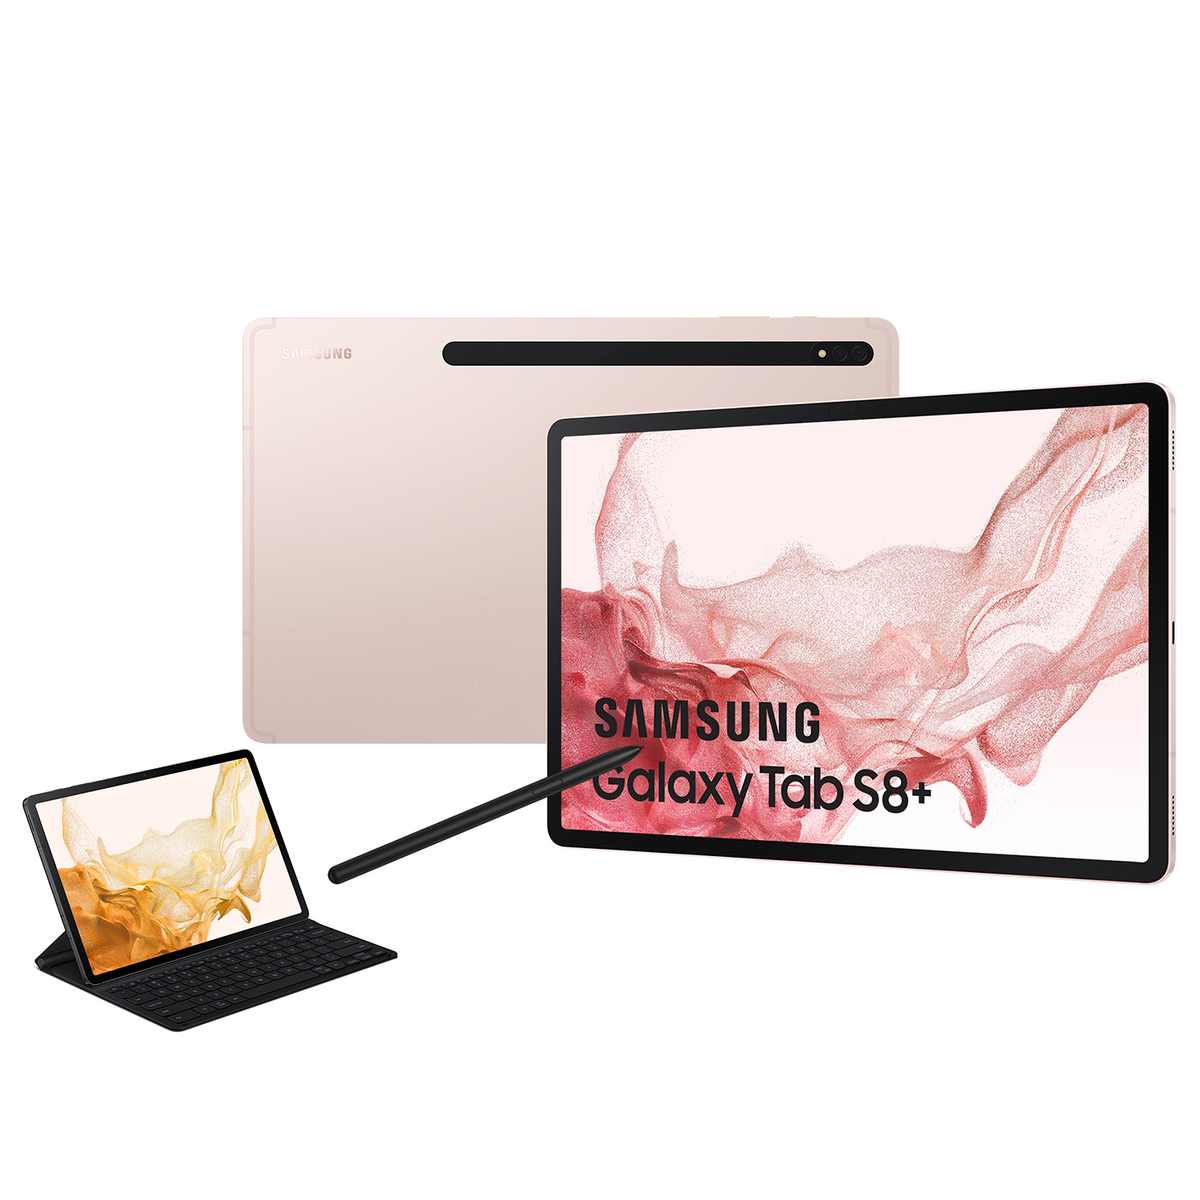 SAMSUNG Galaxy Tab S8+, 256 GB, Tablet, 12,4 gold Zoll